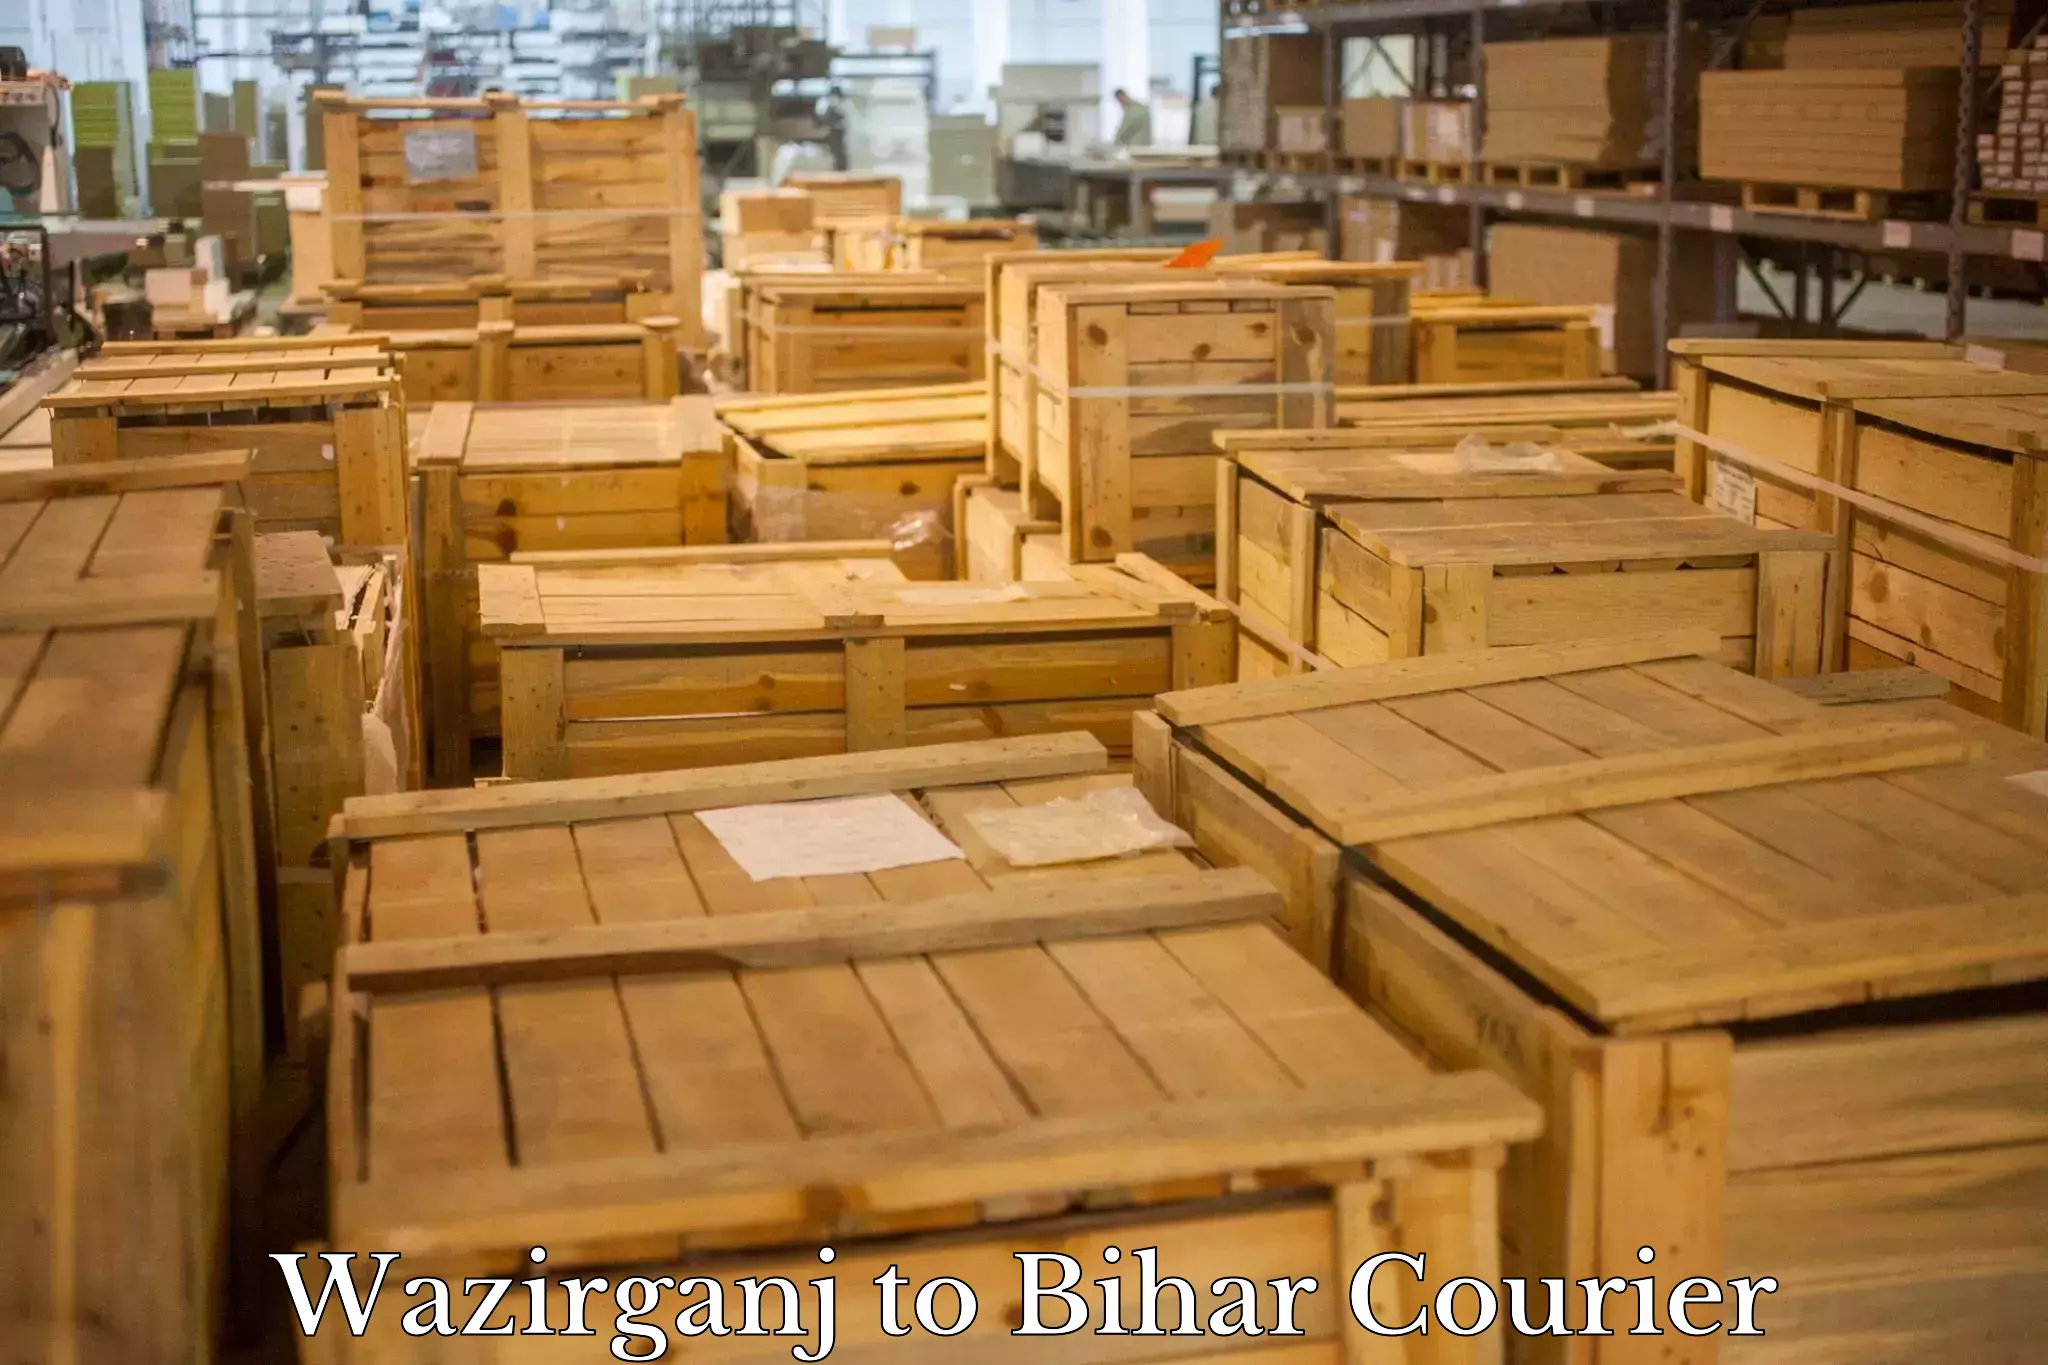 Premium courier solutions in Wazirganj to Bihar